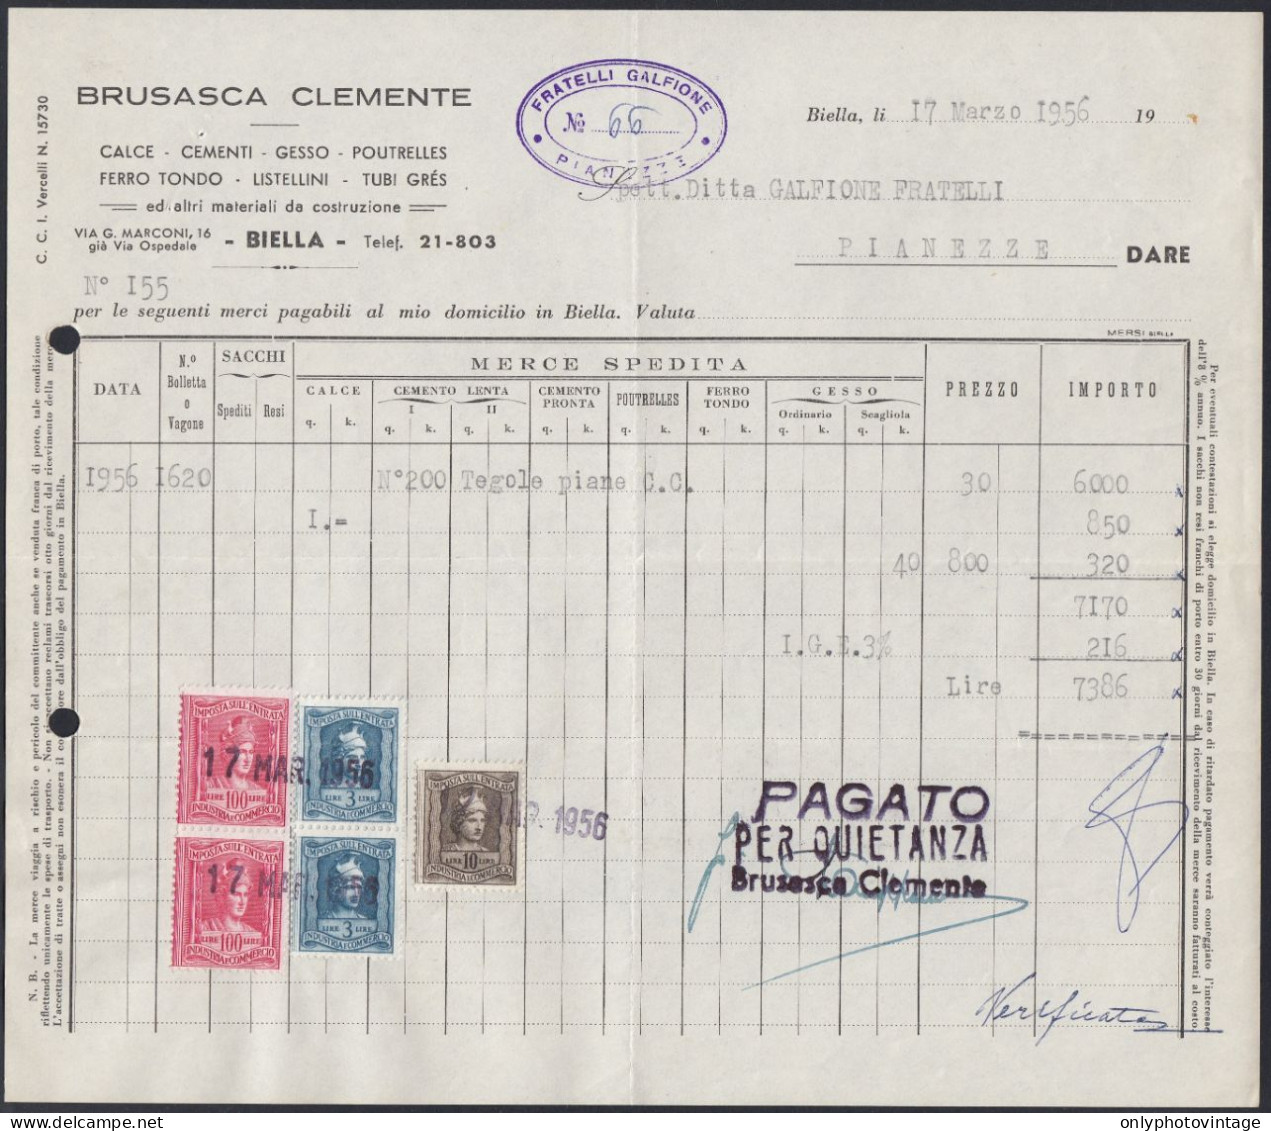 Biella 1956 - Brusasca Clemente - Materiale Da Costruzione - Fattura - Italien